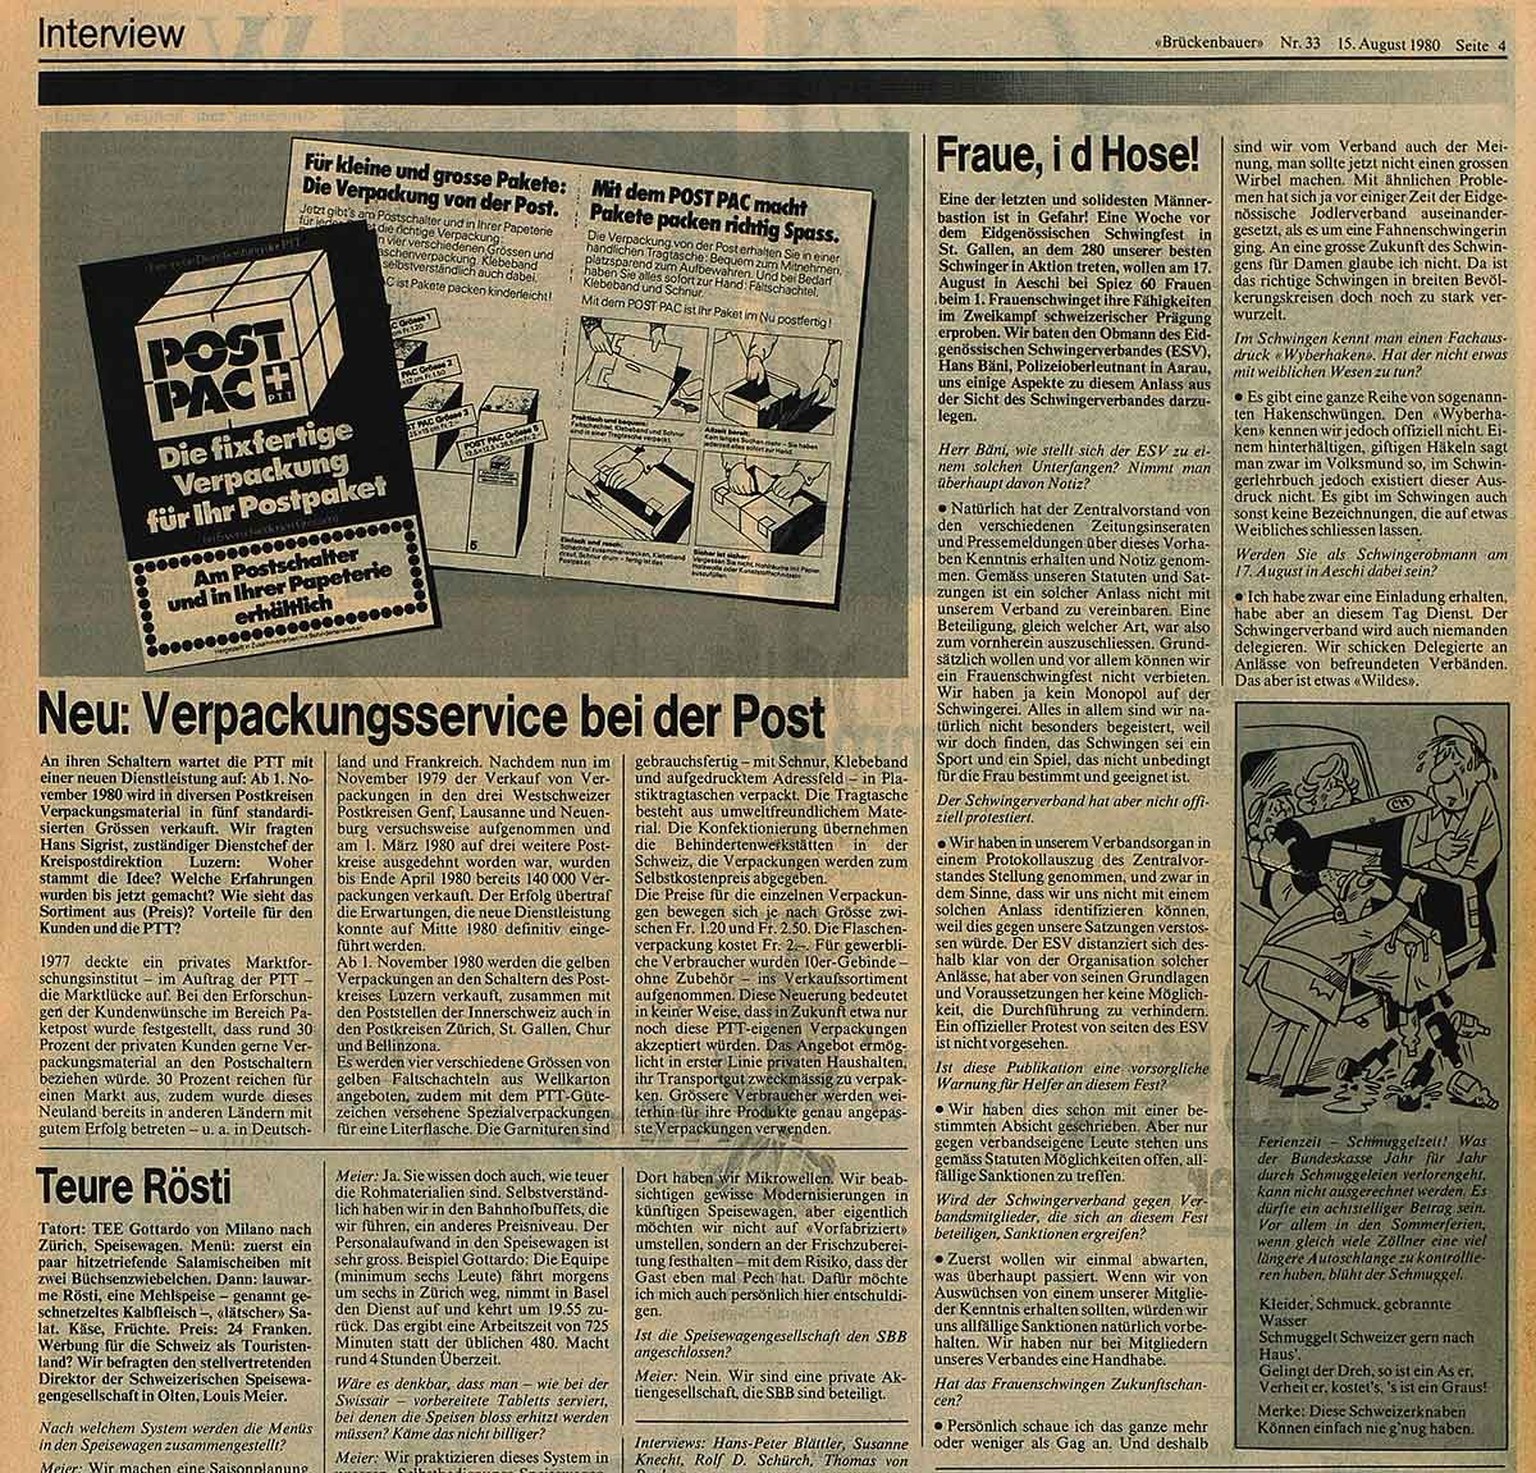 Interview über das Frauenschwingen im Brückenbauer vom 15. August 1980.
https://www.e-newspaperarchives.ch/?a=d&amp;d=MIM19800815-01.2.12&amp;e=-------de-20--1--img-txIN--------0-----